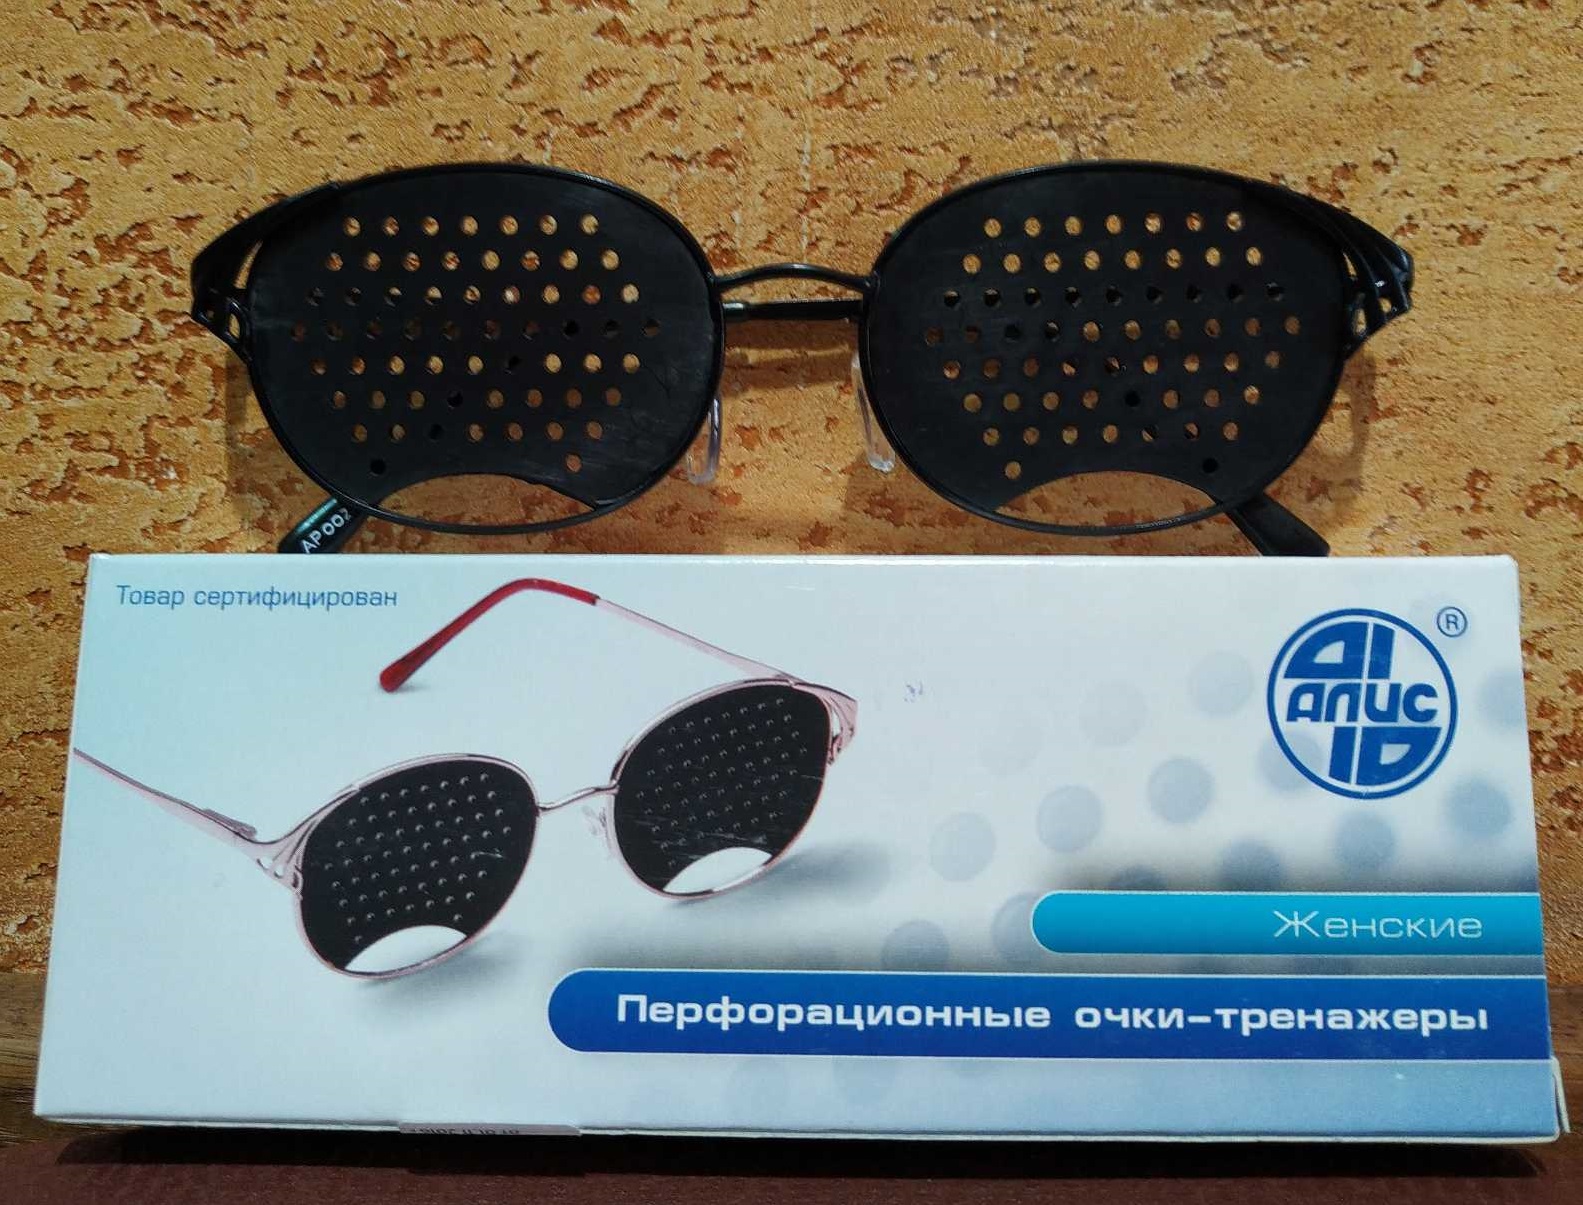 Очки тренажеры для улучшения зрения Федоровские - ЖЕНСКИЕ, качество Алис - 96